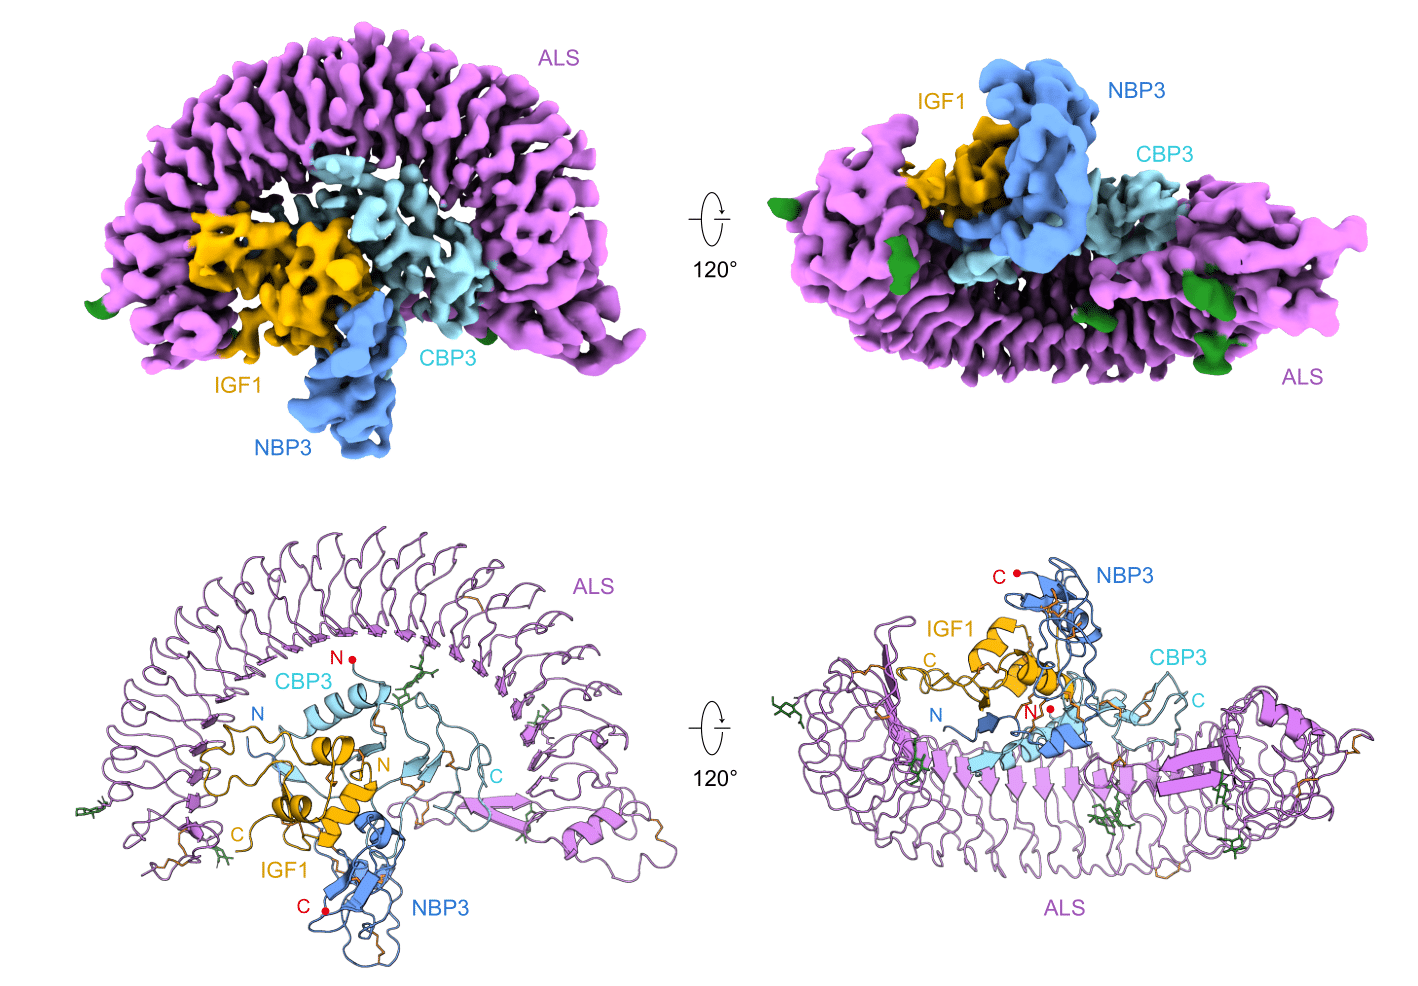 Figure 1. Cryo-EM structure of human IGF1/IGFBP3/ALS ternary complex